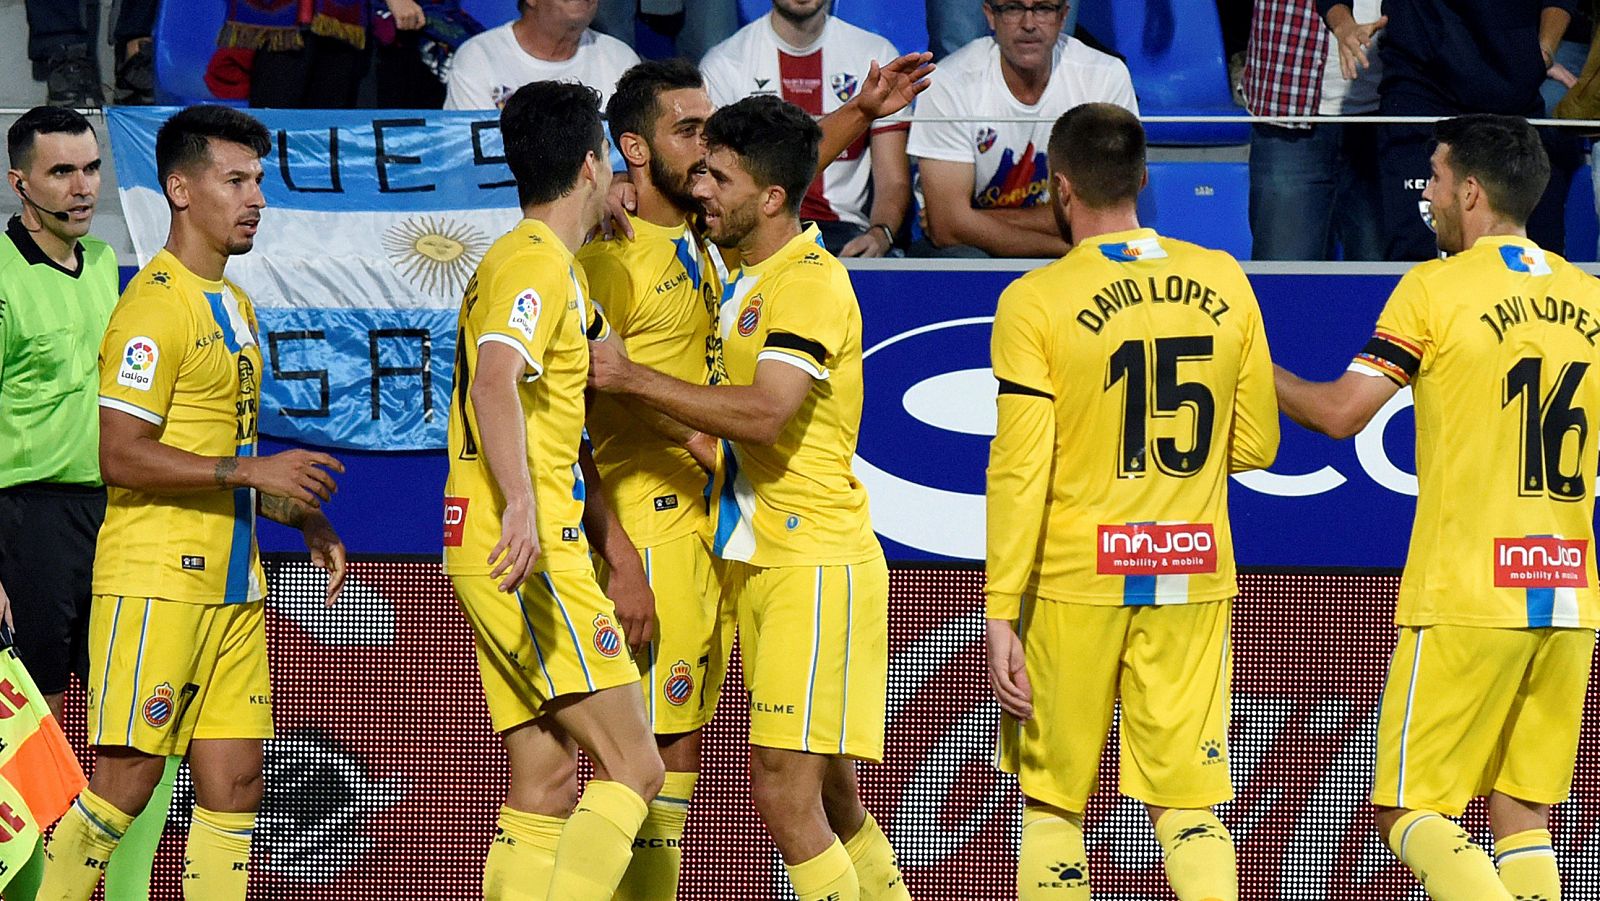 El delantero del R. C. D. Español, Borja Iglesias (c), celebra con sus compañeros su gol anotado ante el Huesca, durante el partido correspondiente a la novena jornada de LaLiga Santander. EFE/ Javier Blasco